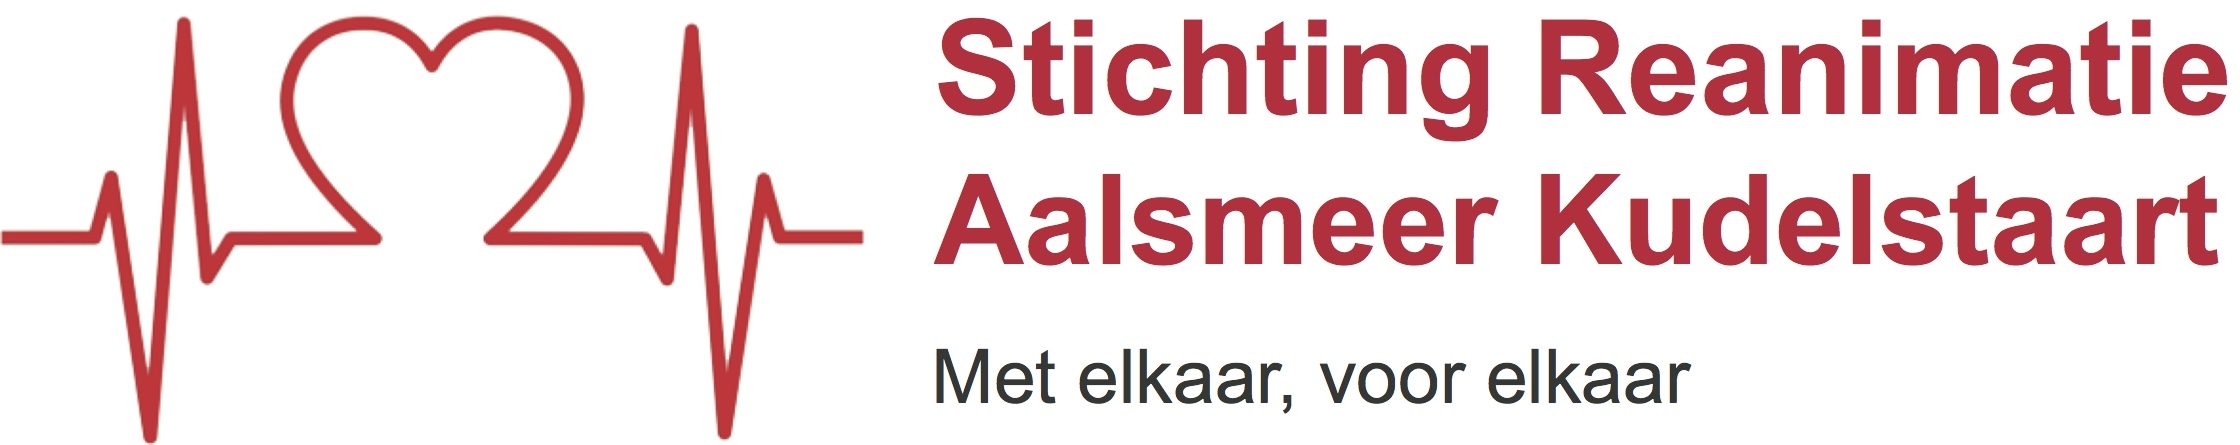 Stichting Reanimatie Aalsmeer Kudelstaart